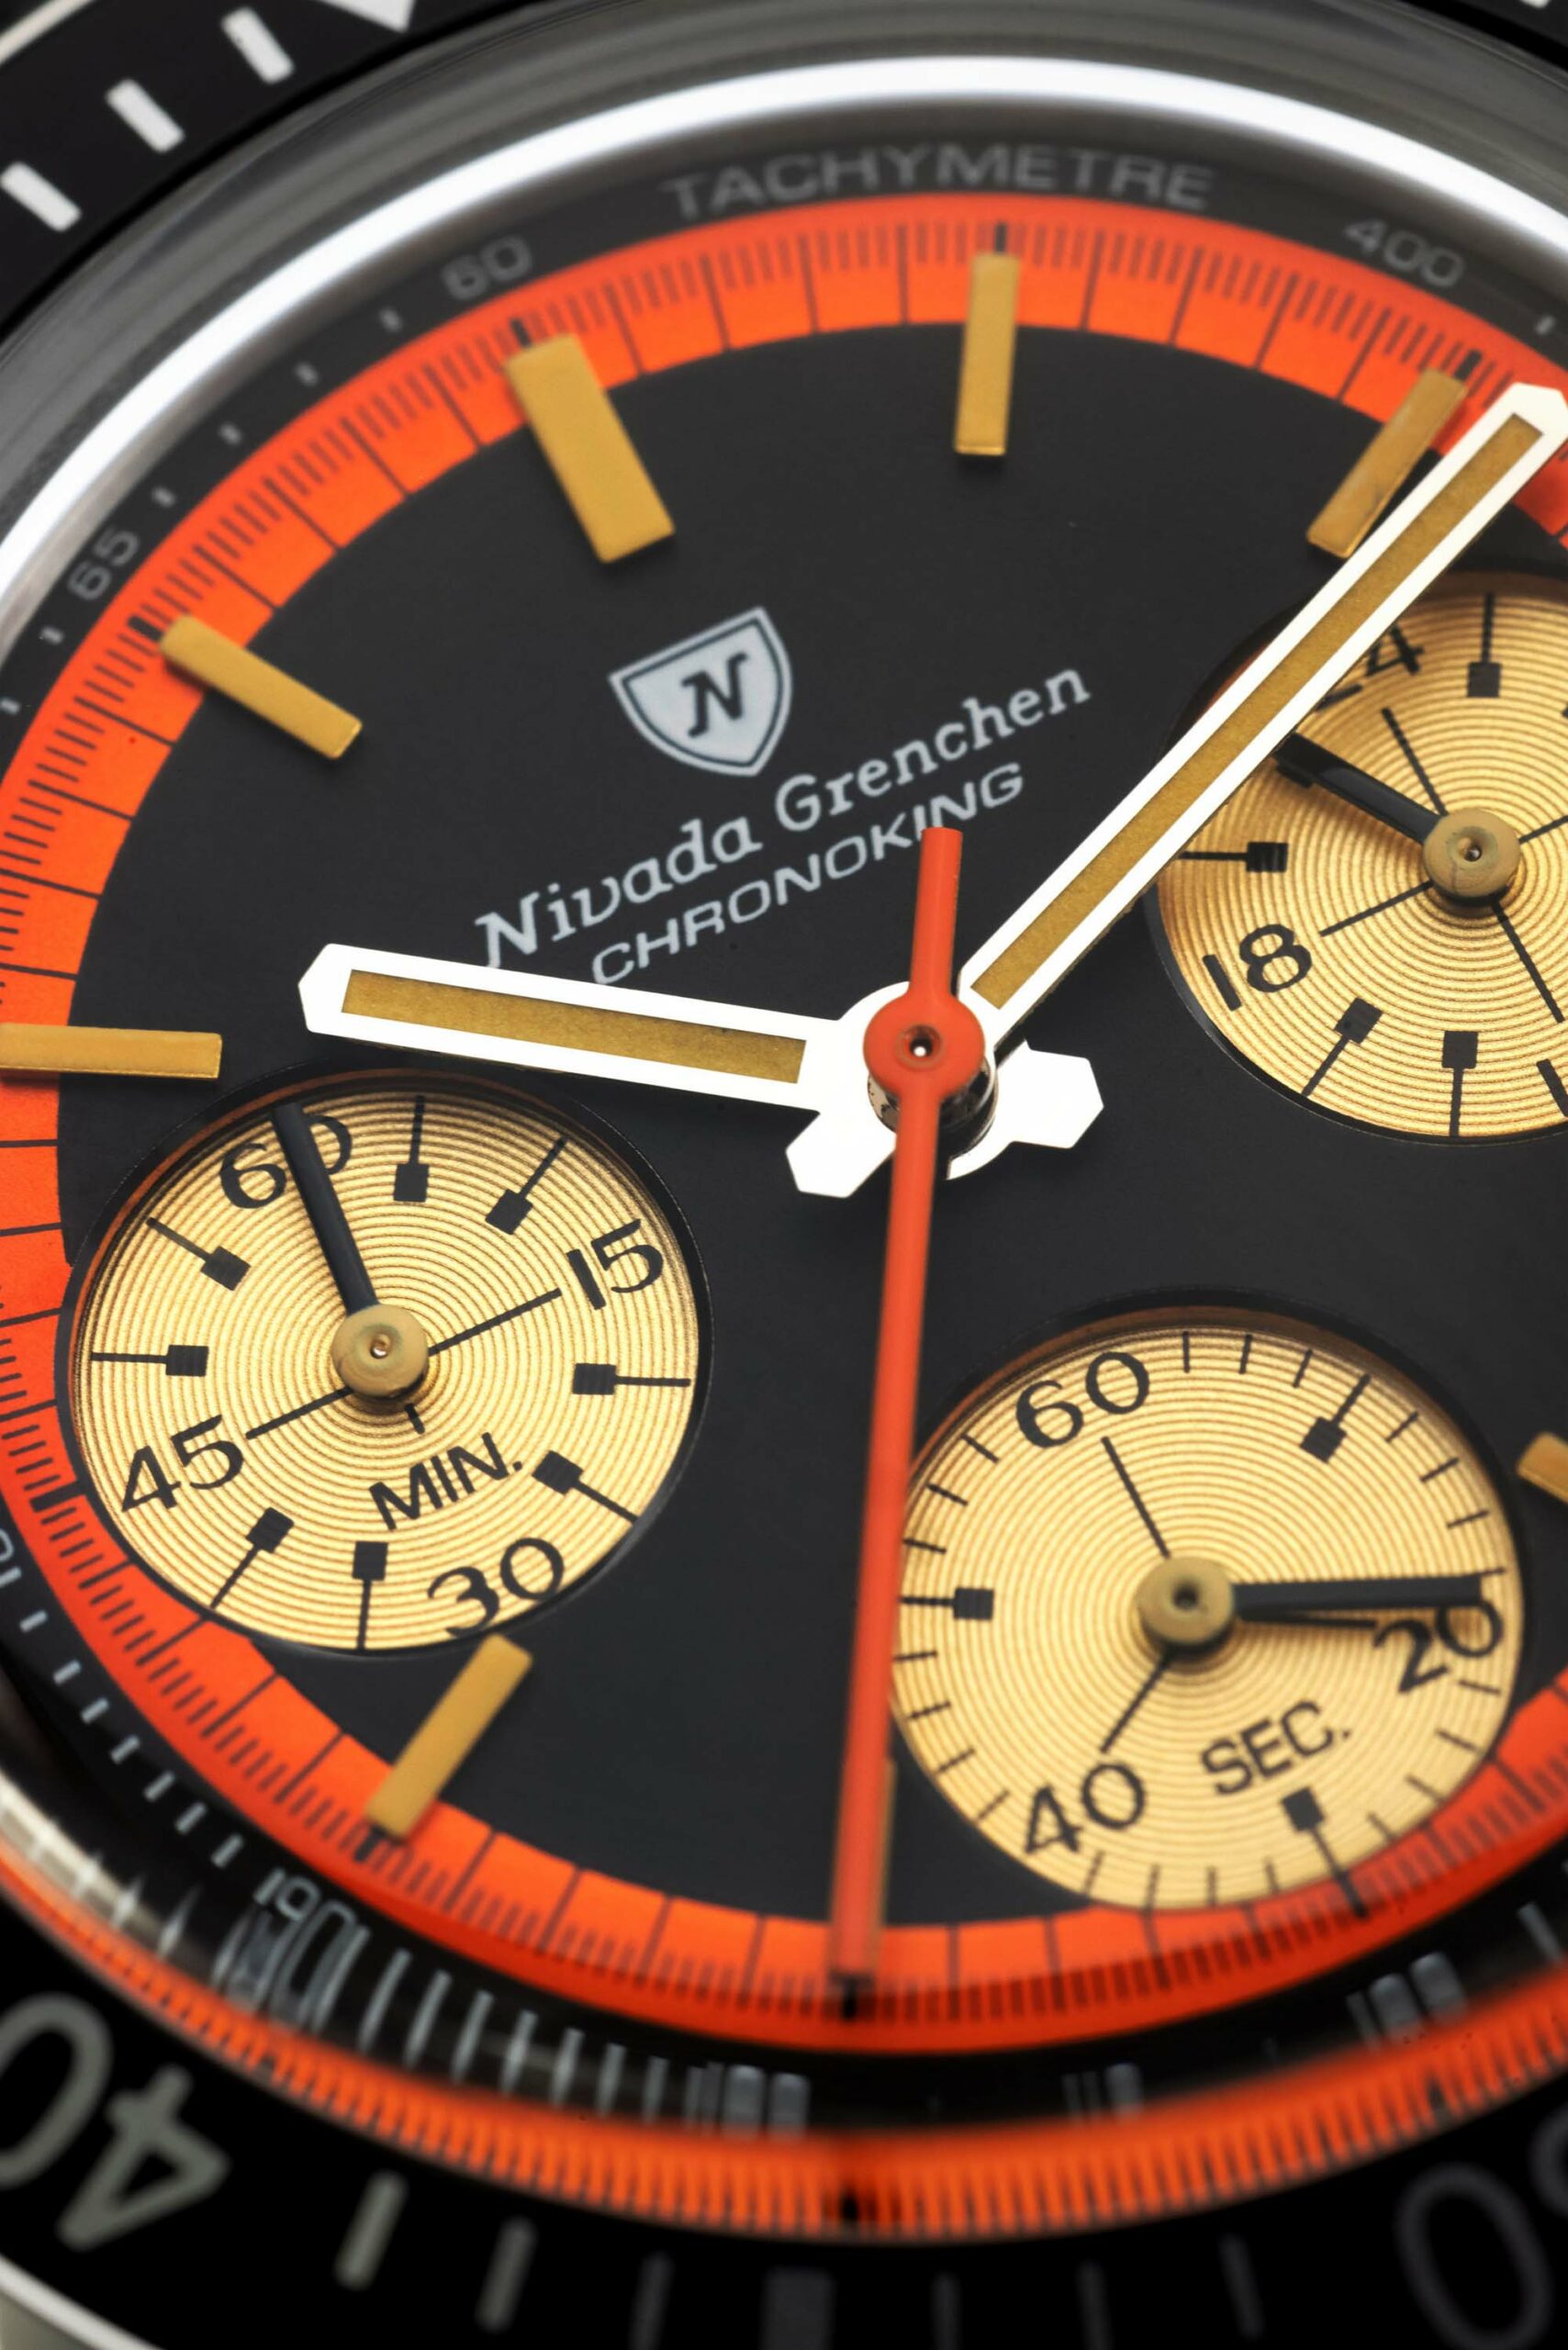 Новинка: Оранжевые часы Nivada Grenchen Chronoking 